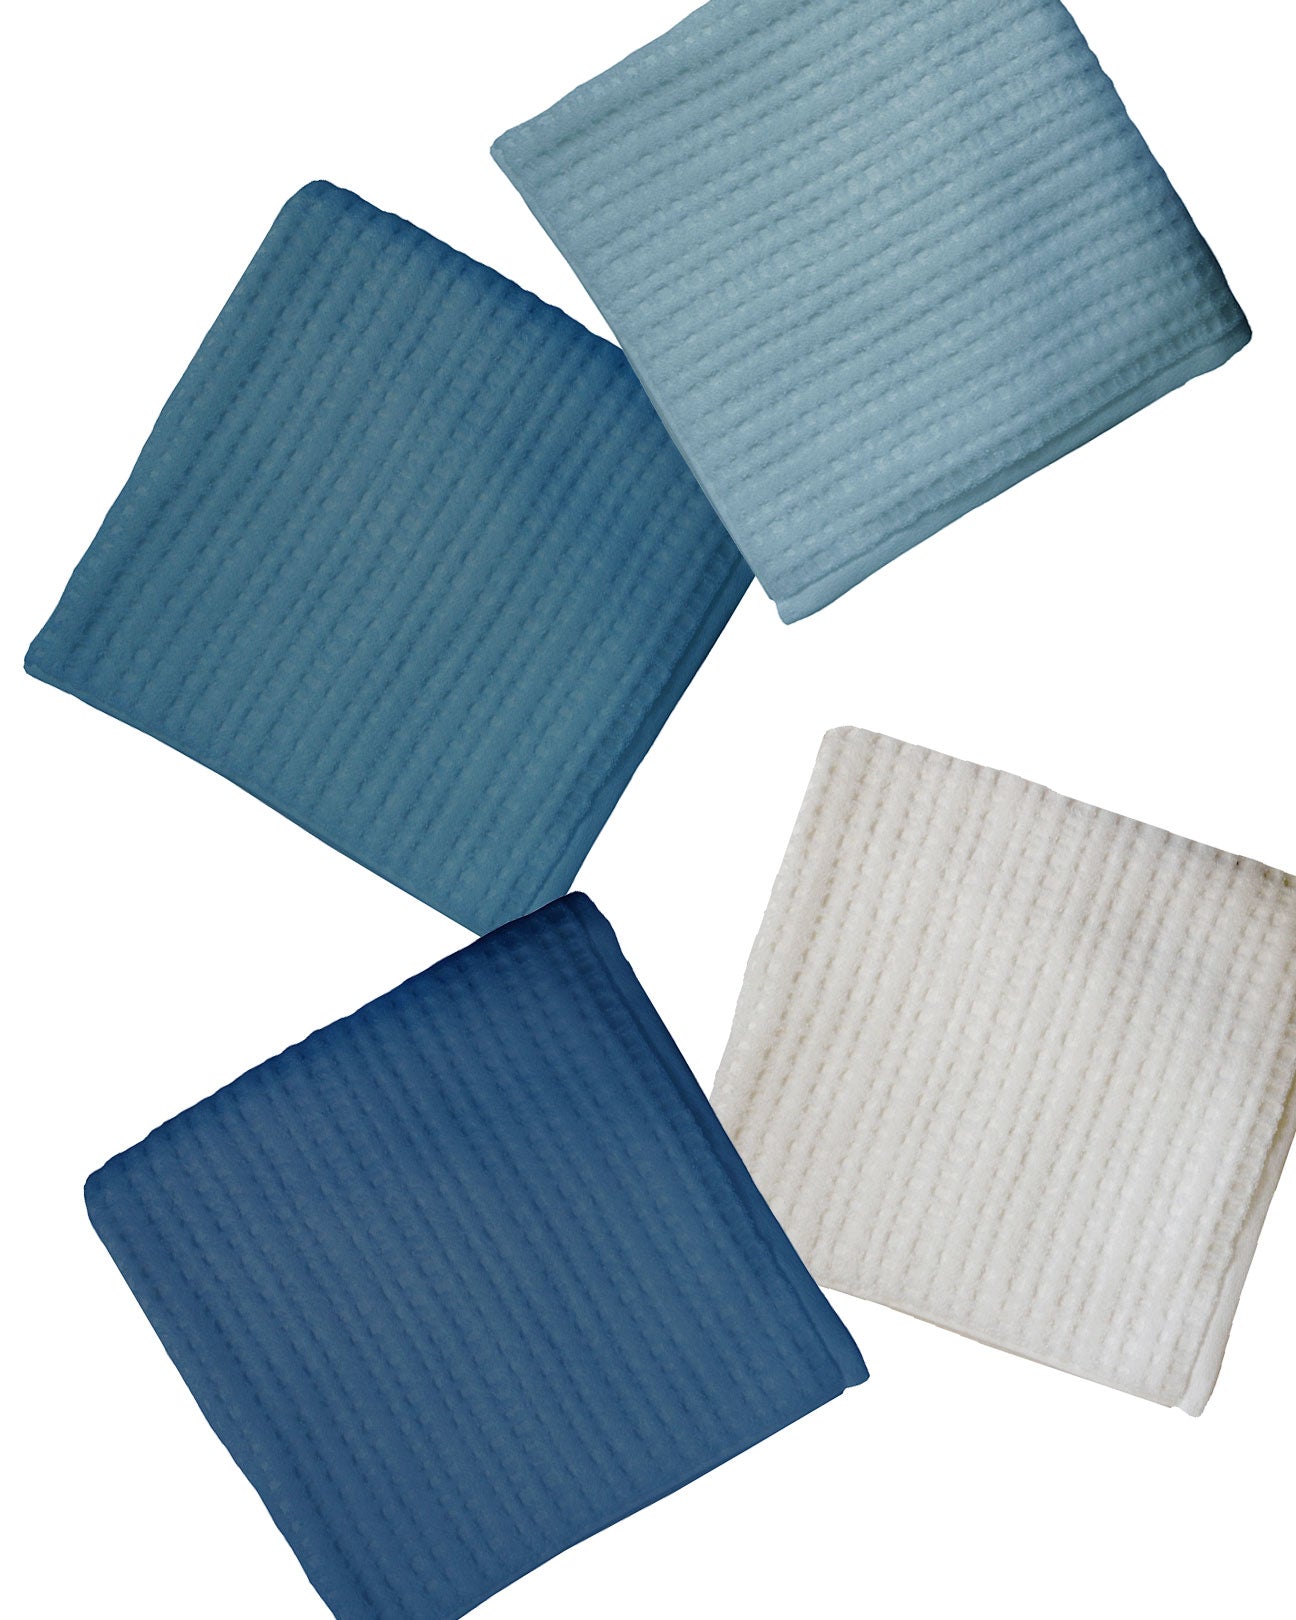 http://affinashop.com/cdn/shop/products/gracilis-towels-blues.jpg?v=1668714197